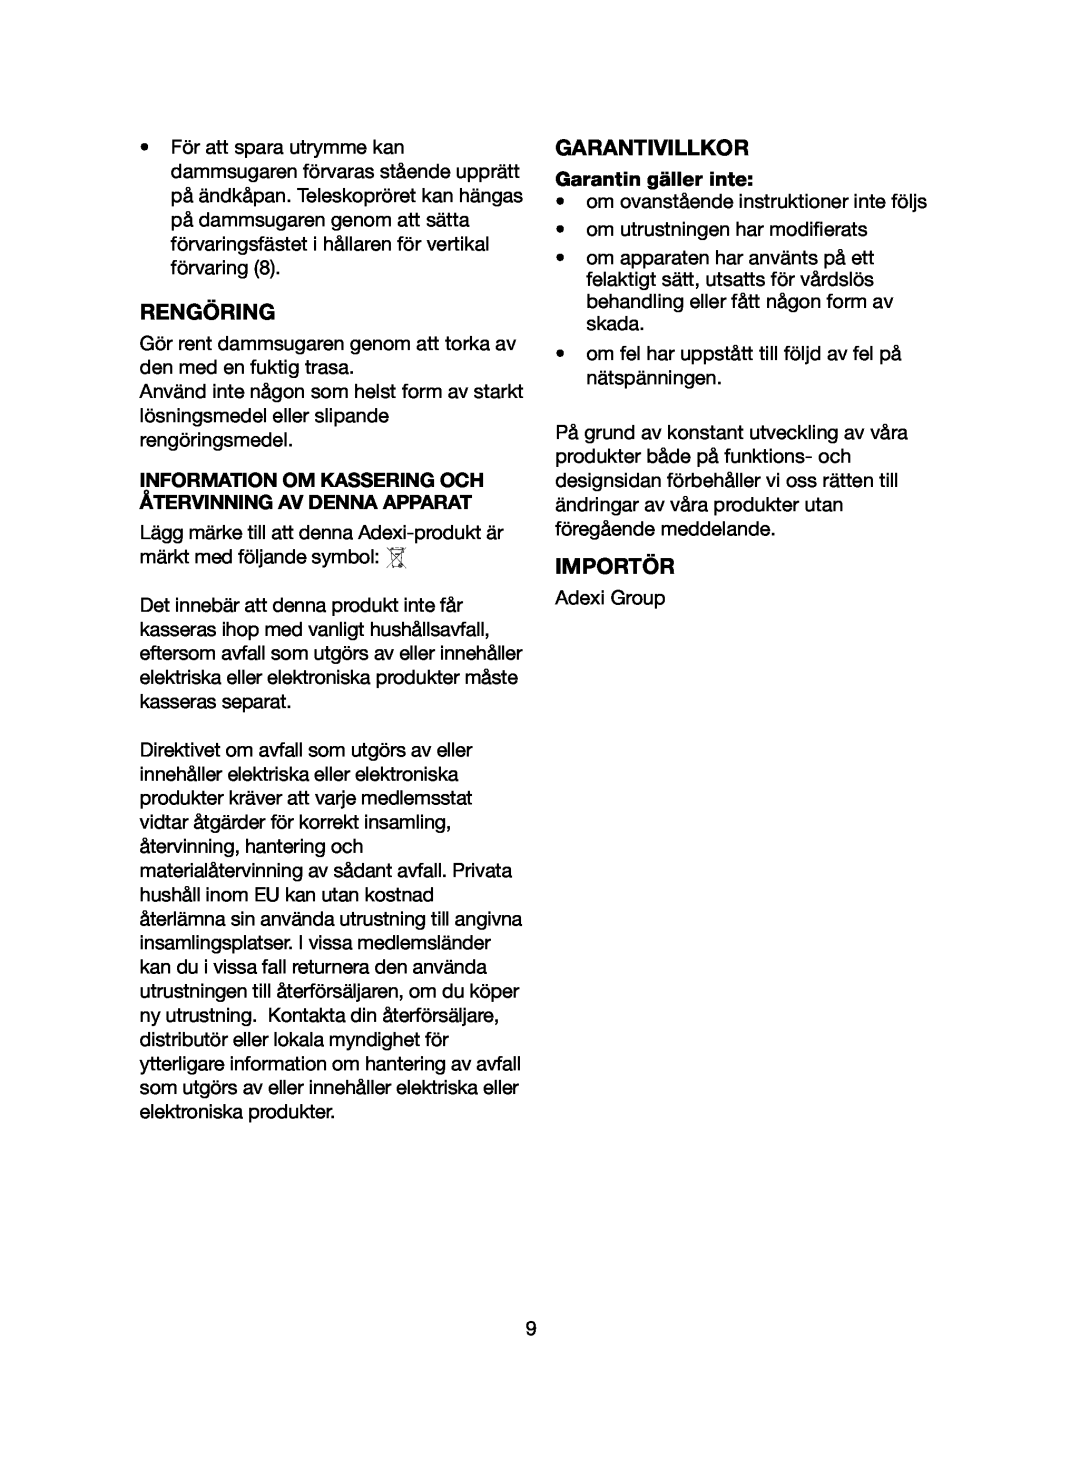 Melissa 640-058 manual Rengöring, Garantivillkor, Importör, Information Om Kassering Och Återvinning Av Denna Apparat 